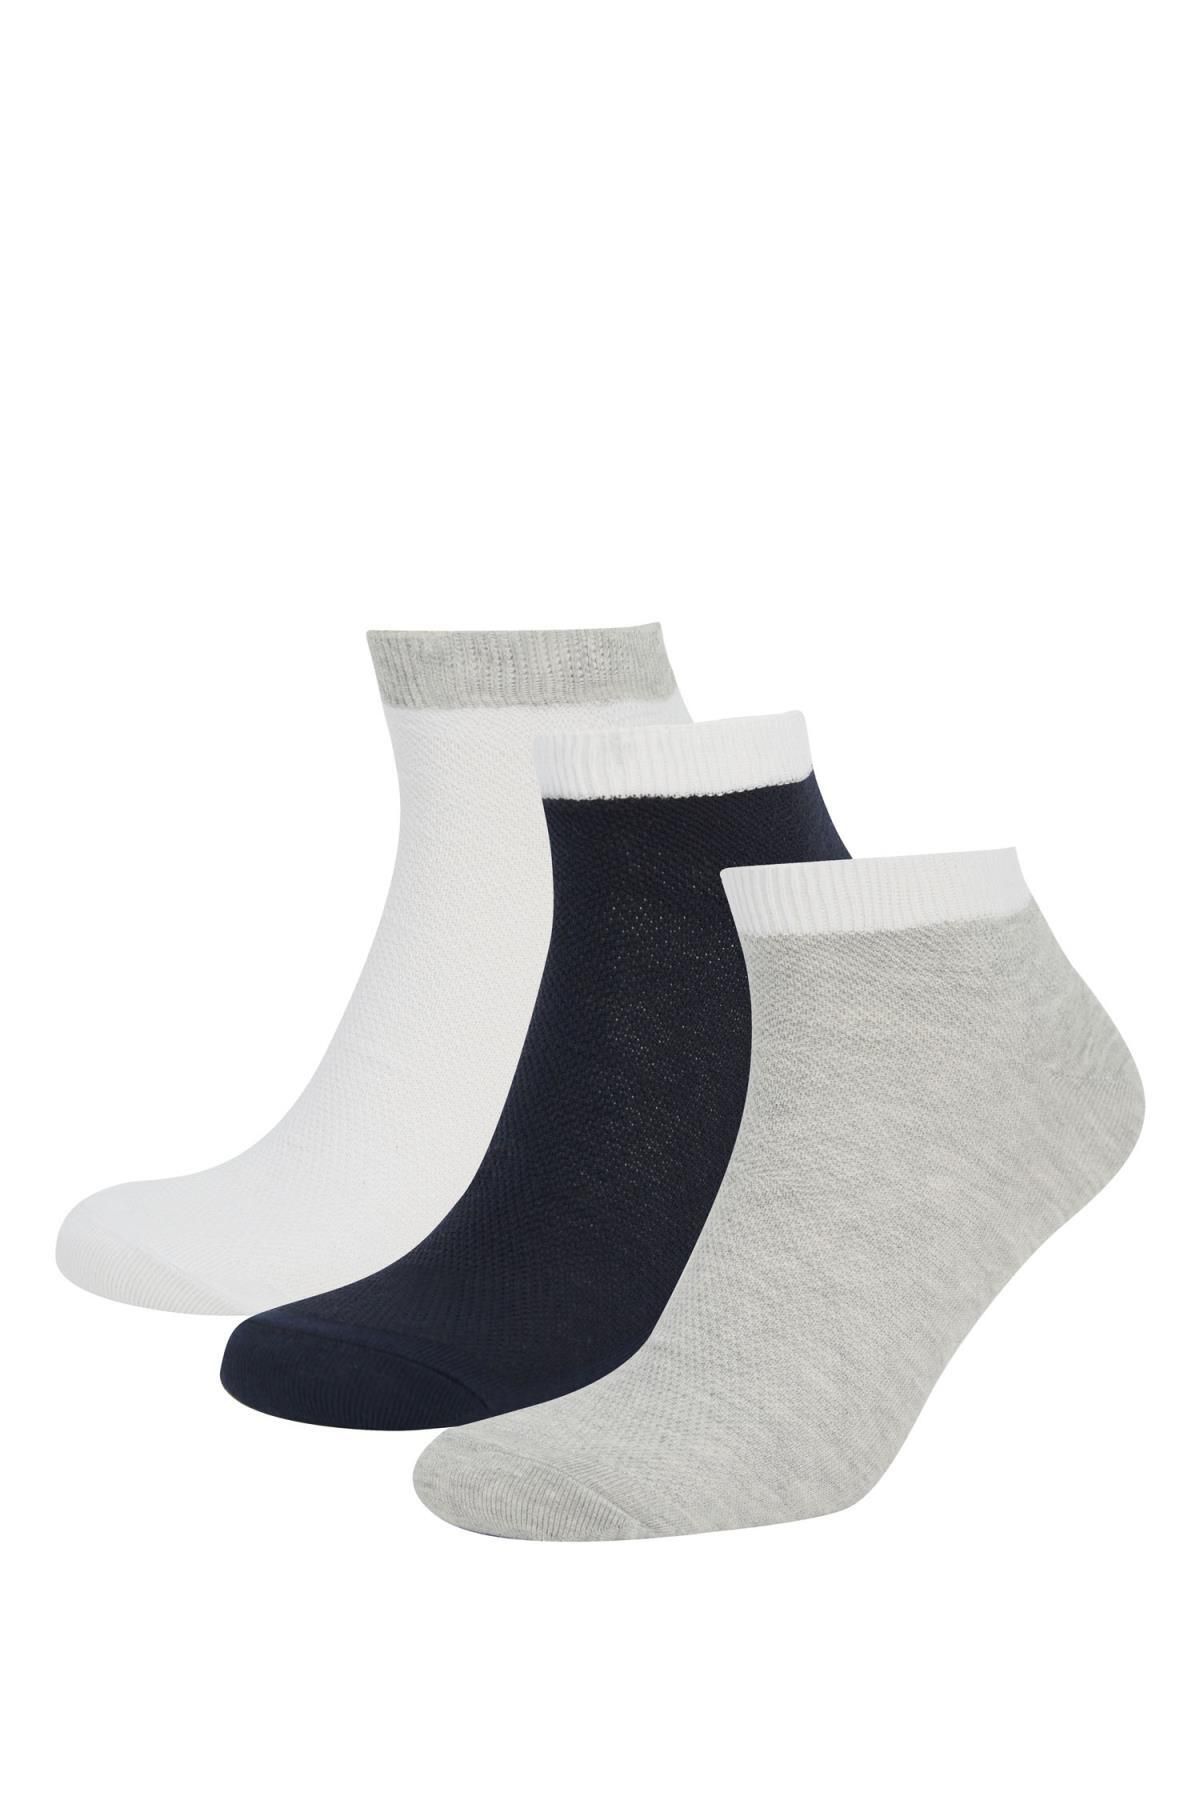 Defacto Erkek 3lü Pamuklu Patik Çorap T7196azns